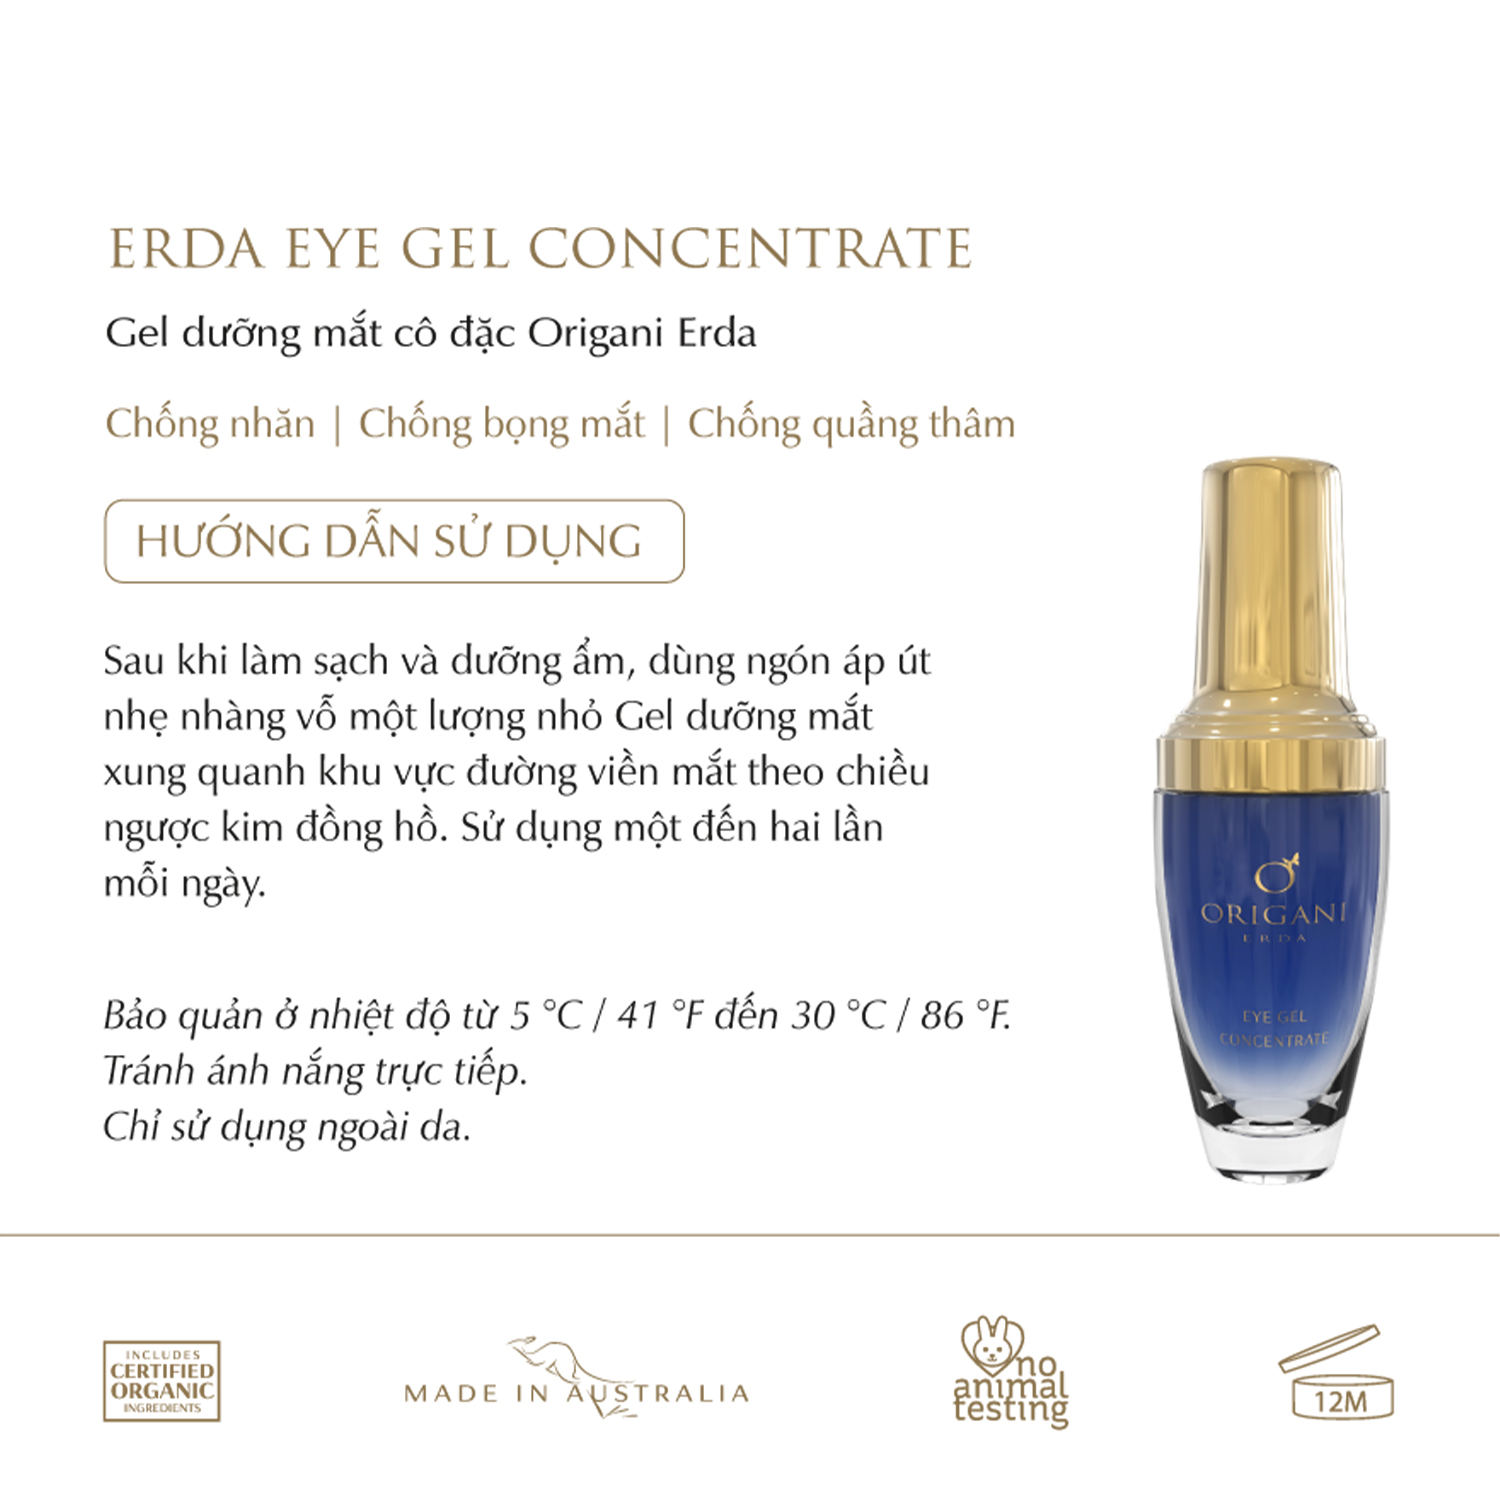 Gel Dưỡng Mắt Cô Đặc - Origani Erda Eye Gel Concentrate 30ml - Có chứng nhận hữu cơ - Xuất xứ Úc - Cung cấp dưỡng chất và độ ẩm cho mắt